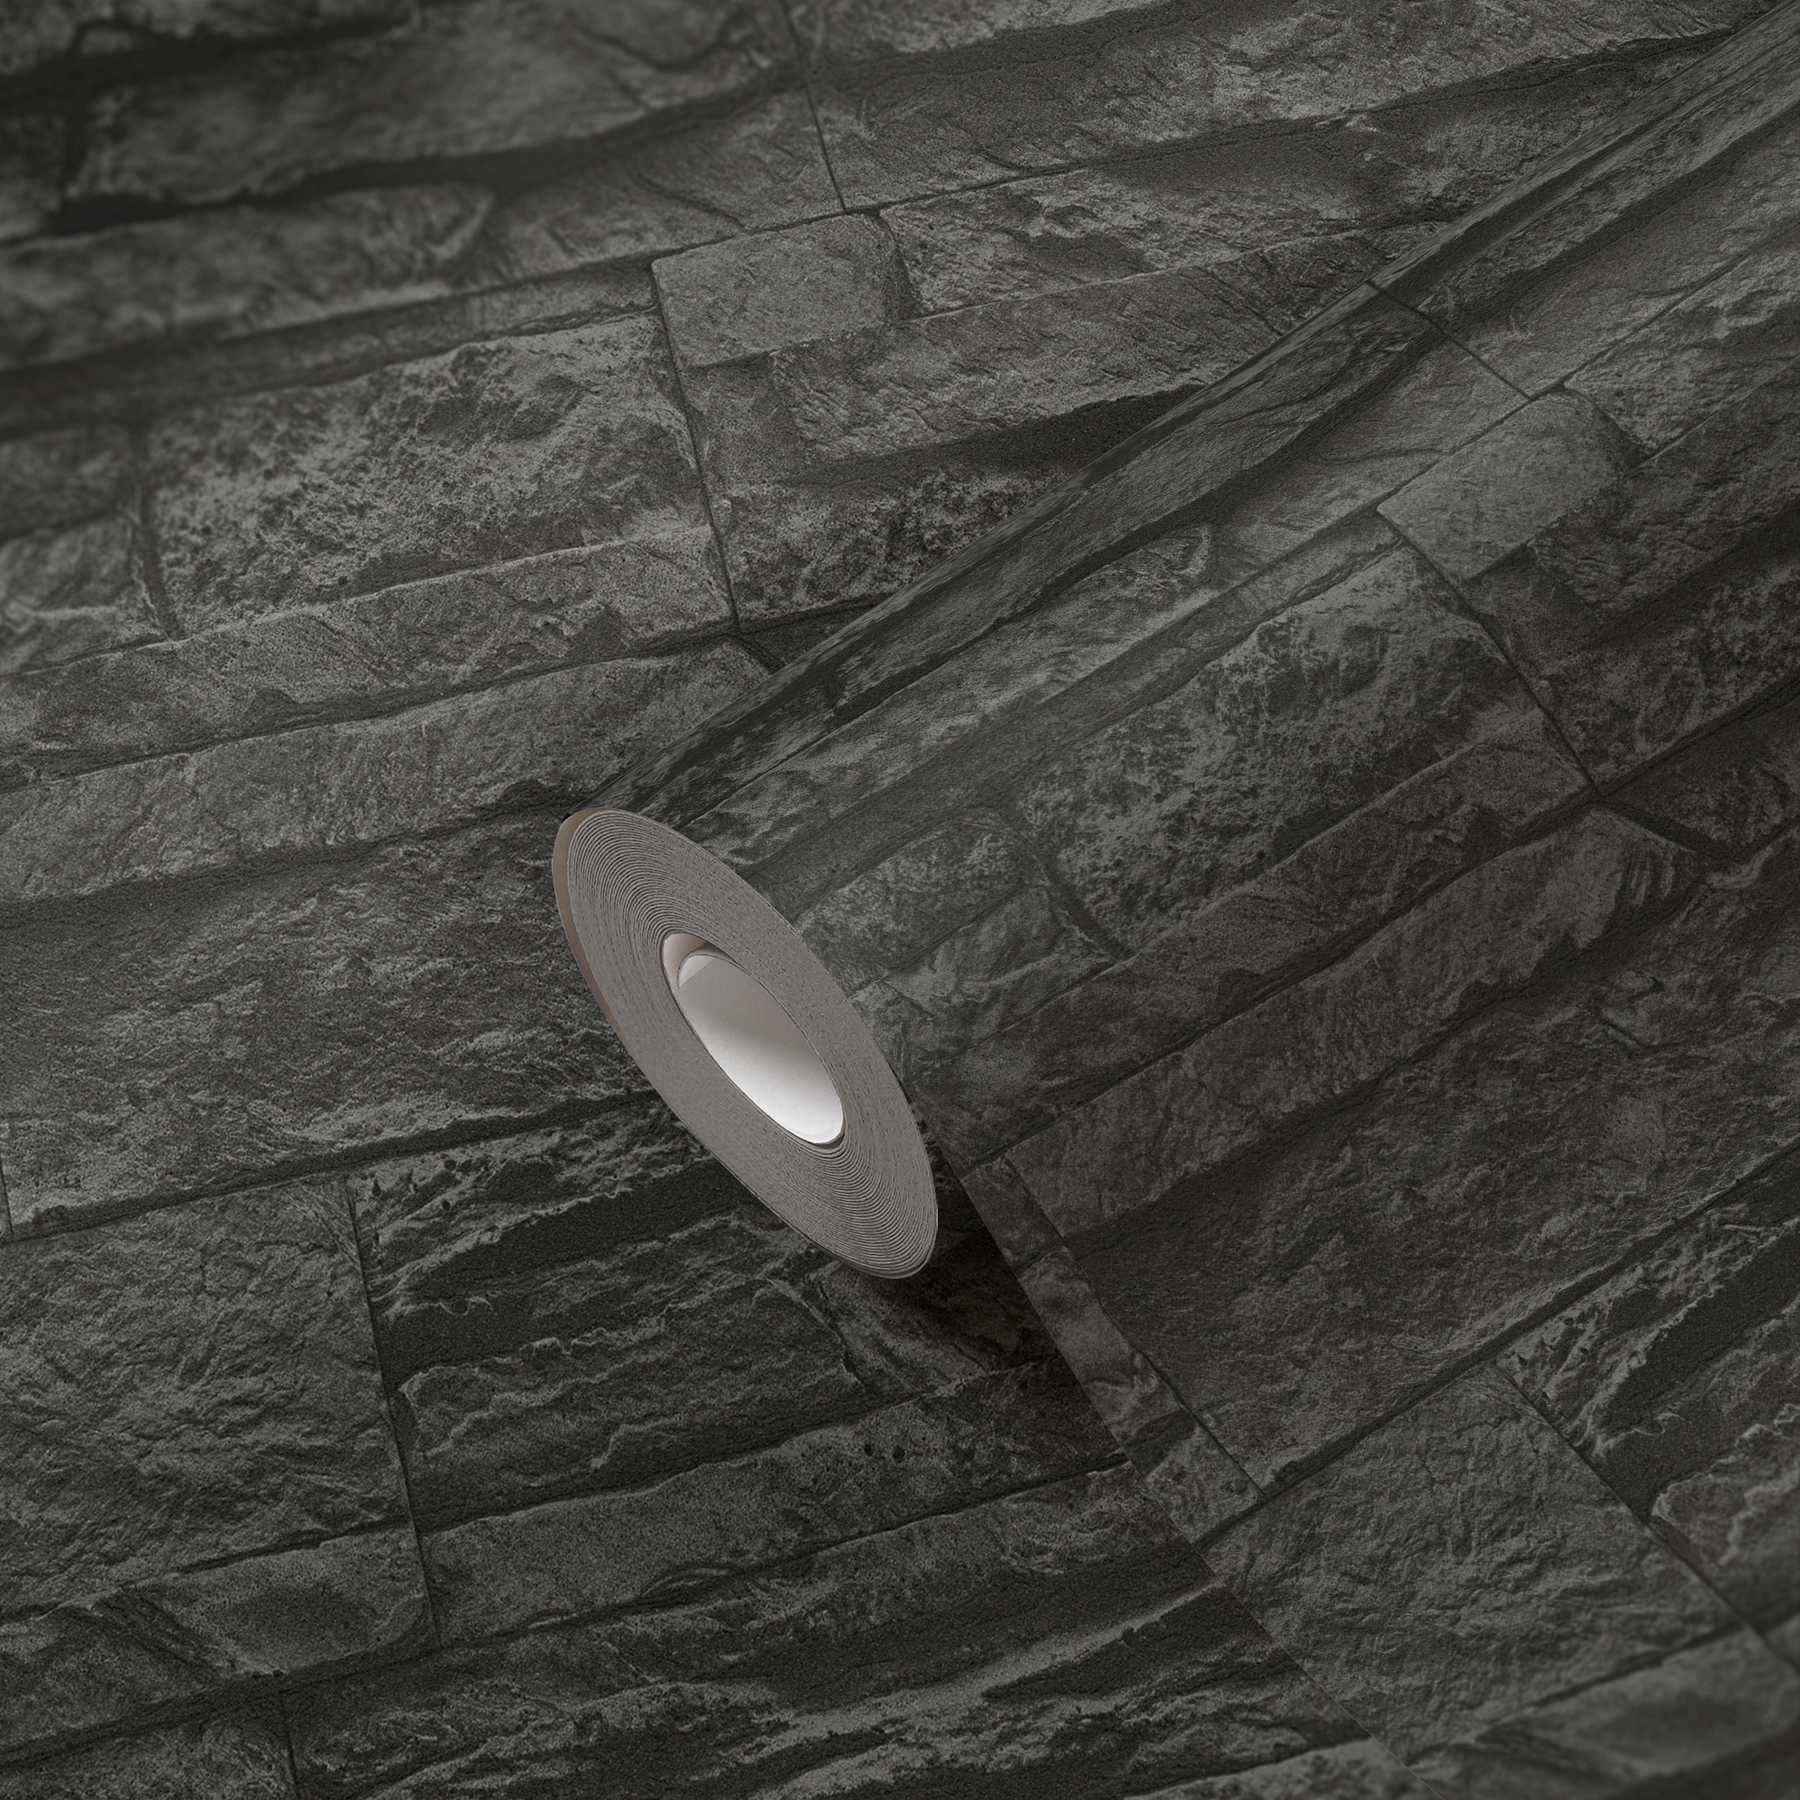             Zwart steenlook behang gedetailleerd & realistisch - Grijs, Zwart
        